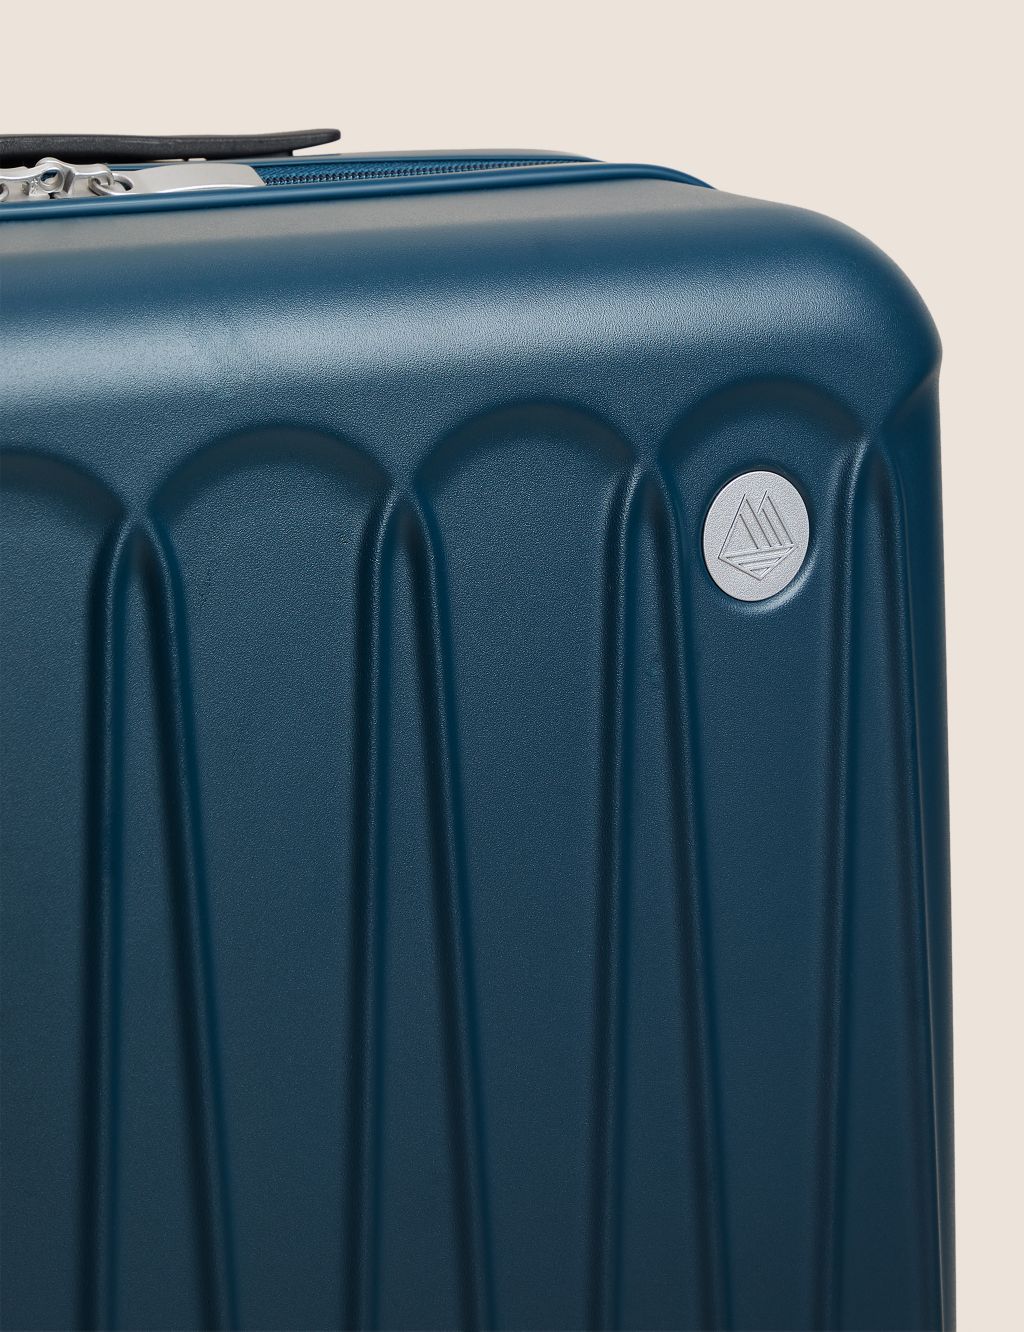 Amalfi 4 Wheel Hard Shell Medium Suitcase image 4